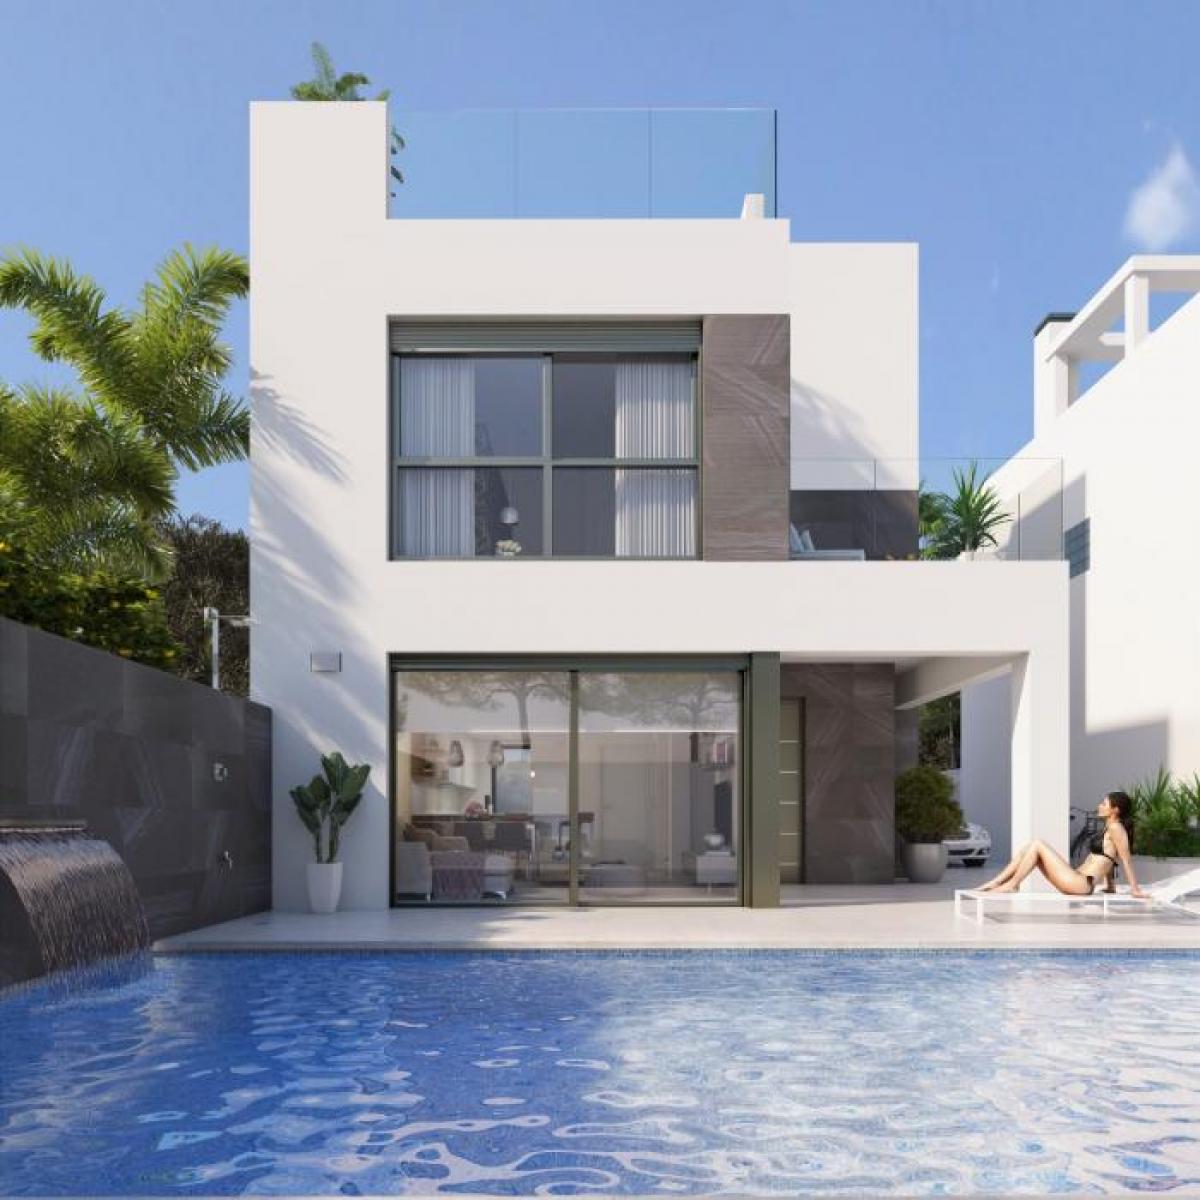 Picture of Villa For Sale in Punta Prima, Alicante, Spain